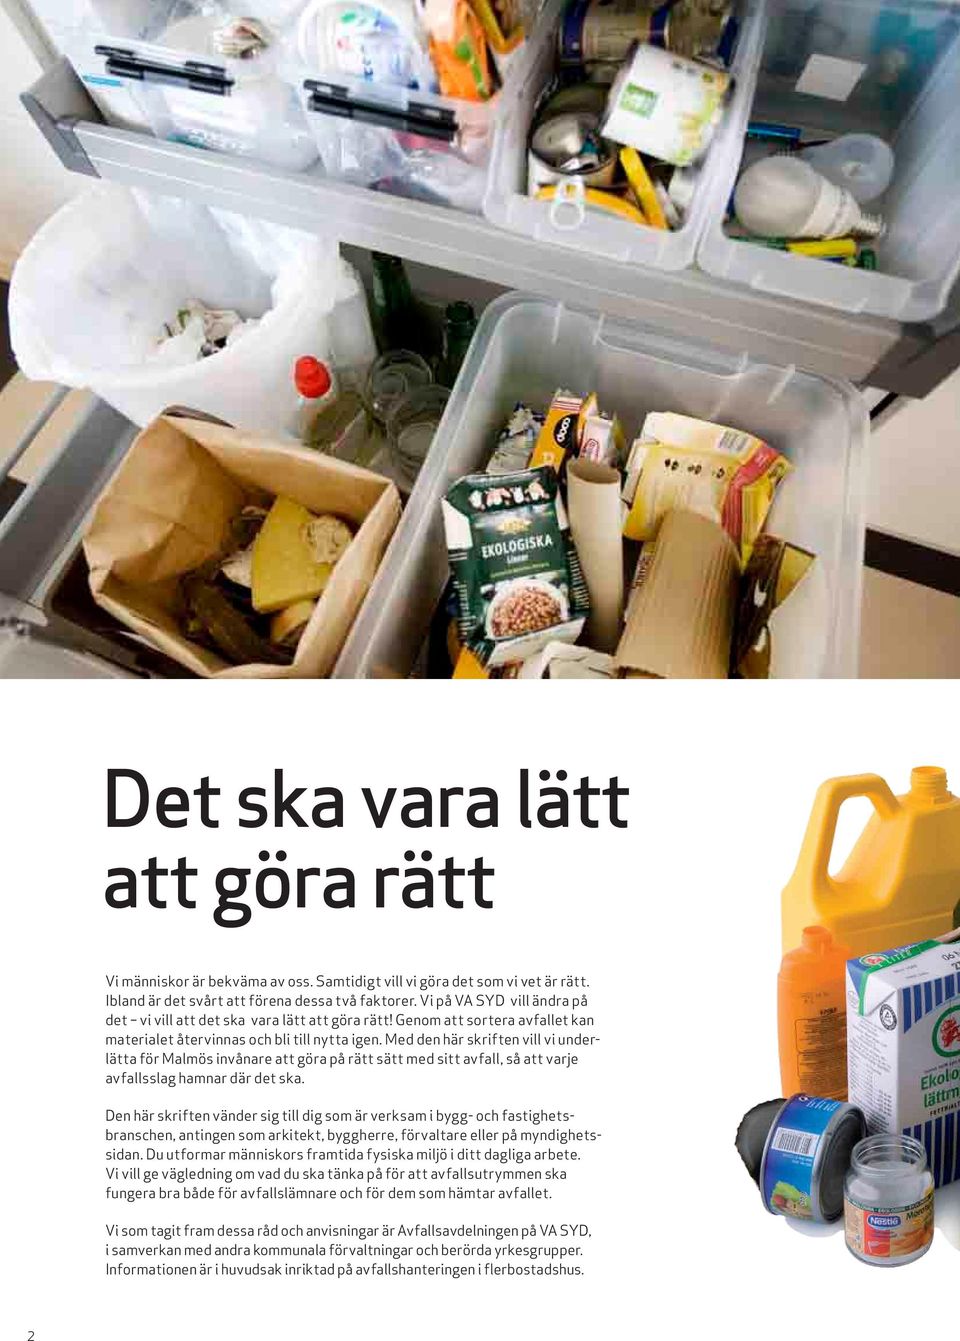 Med den här skriften vill vi underlätta för Malmös invånare att göra på rätt sätt med sitt avfall, så att varje avfallsslag hamnar där det ska.